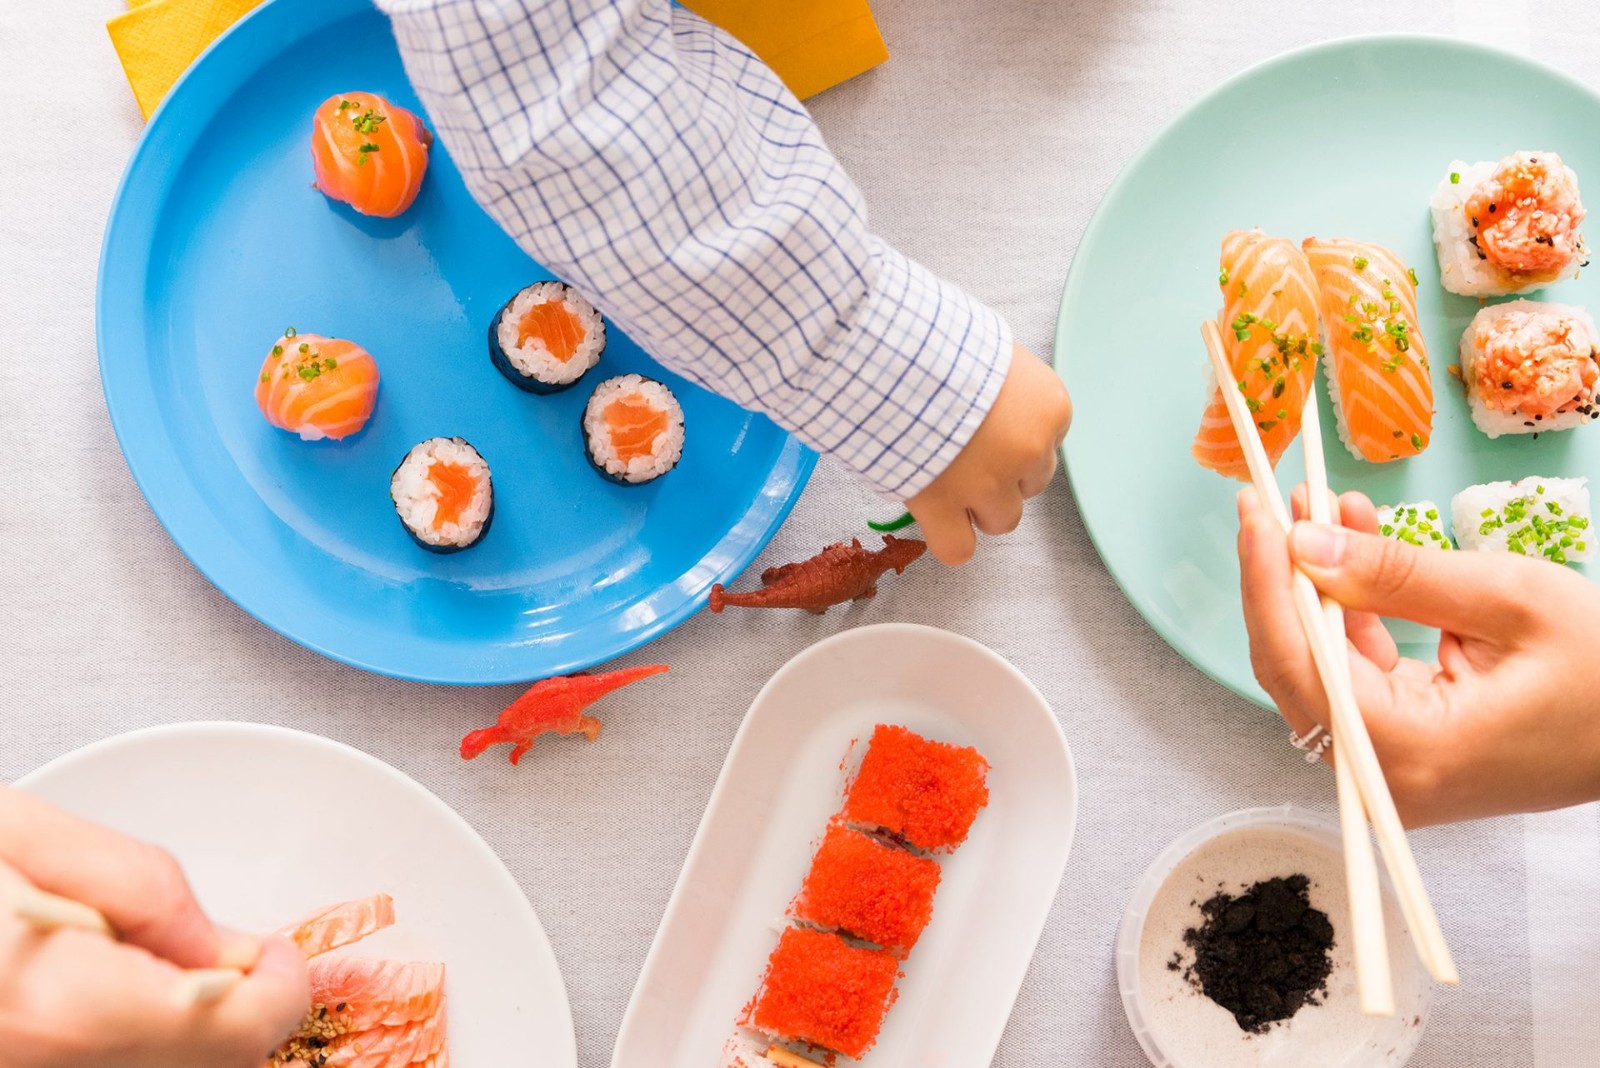 仿真寿司模型儿童玩具日本大食玩物摆件拍摄装饰道具三文鱼片料理-阿里巴巴